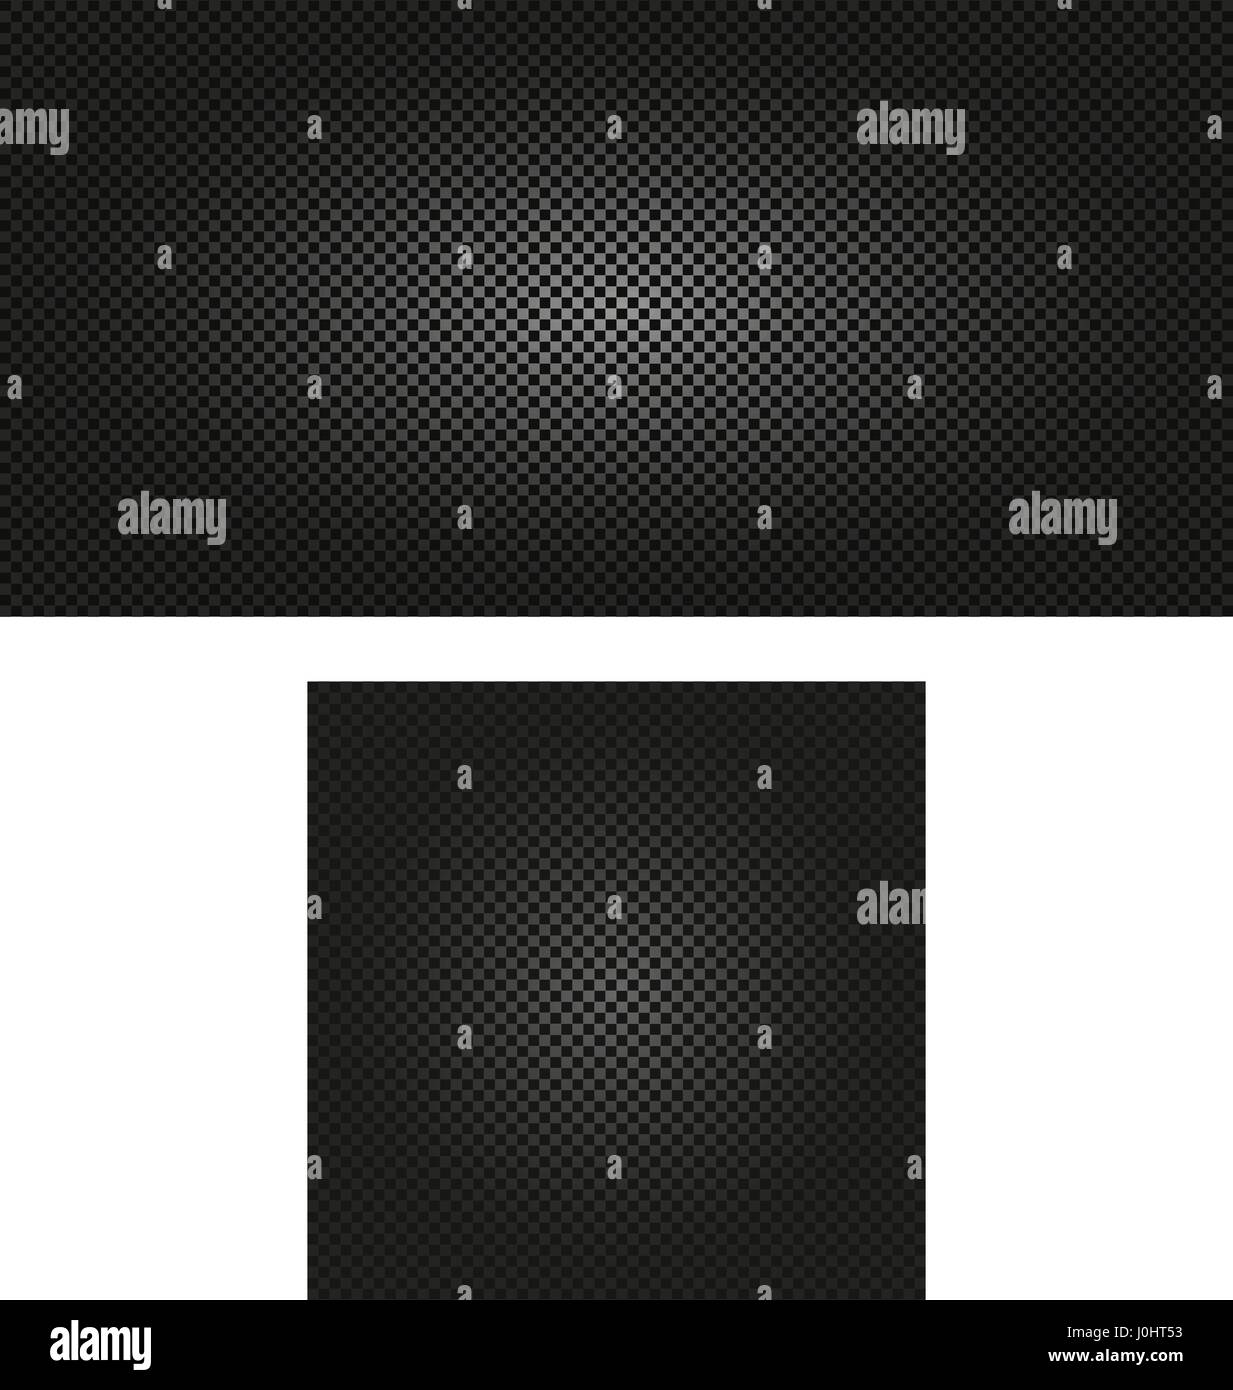 Abstract isolato di colore nero senza giunture a scacchi la texture di sfondo illustrazione vettoriale Illustrazione Vettoriale